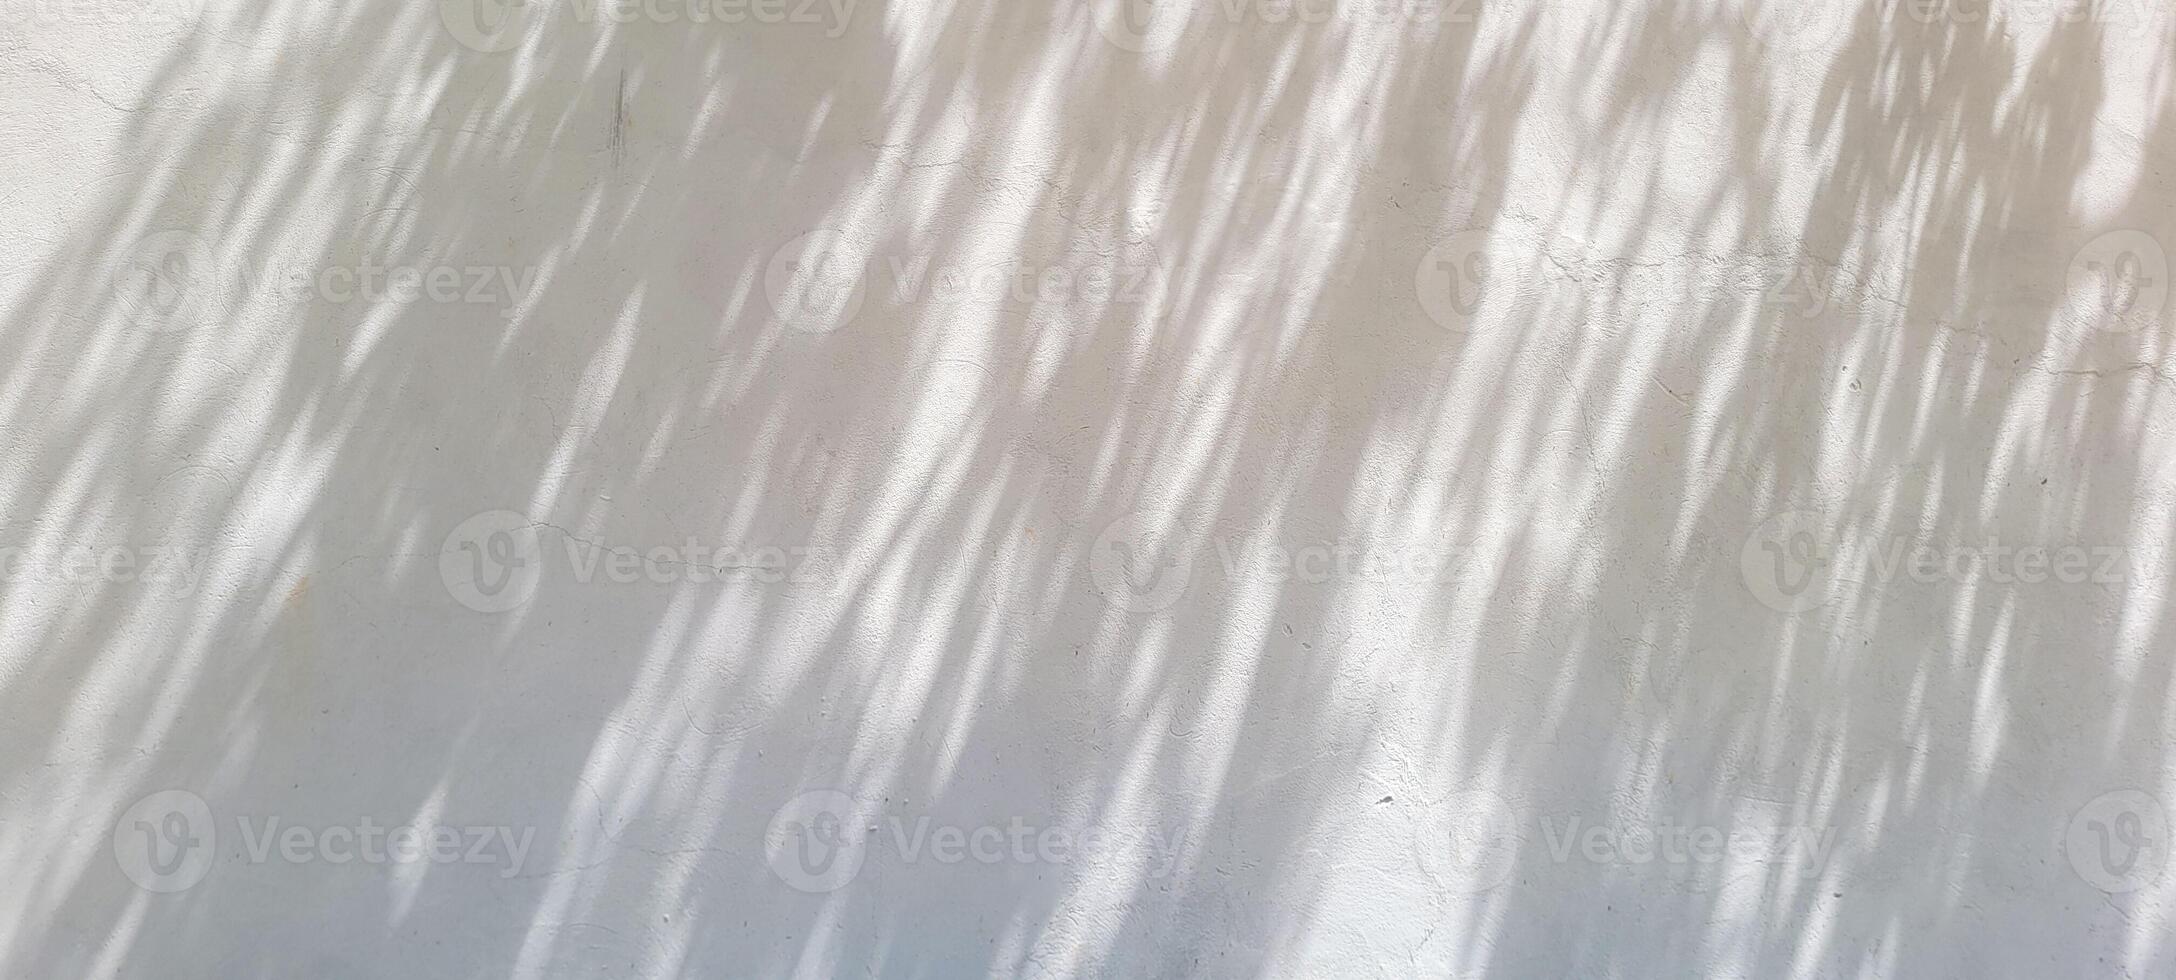 bianca parete strutturato sfondo con foglia ombre e albero rami foto